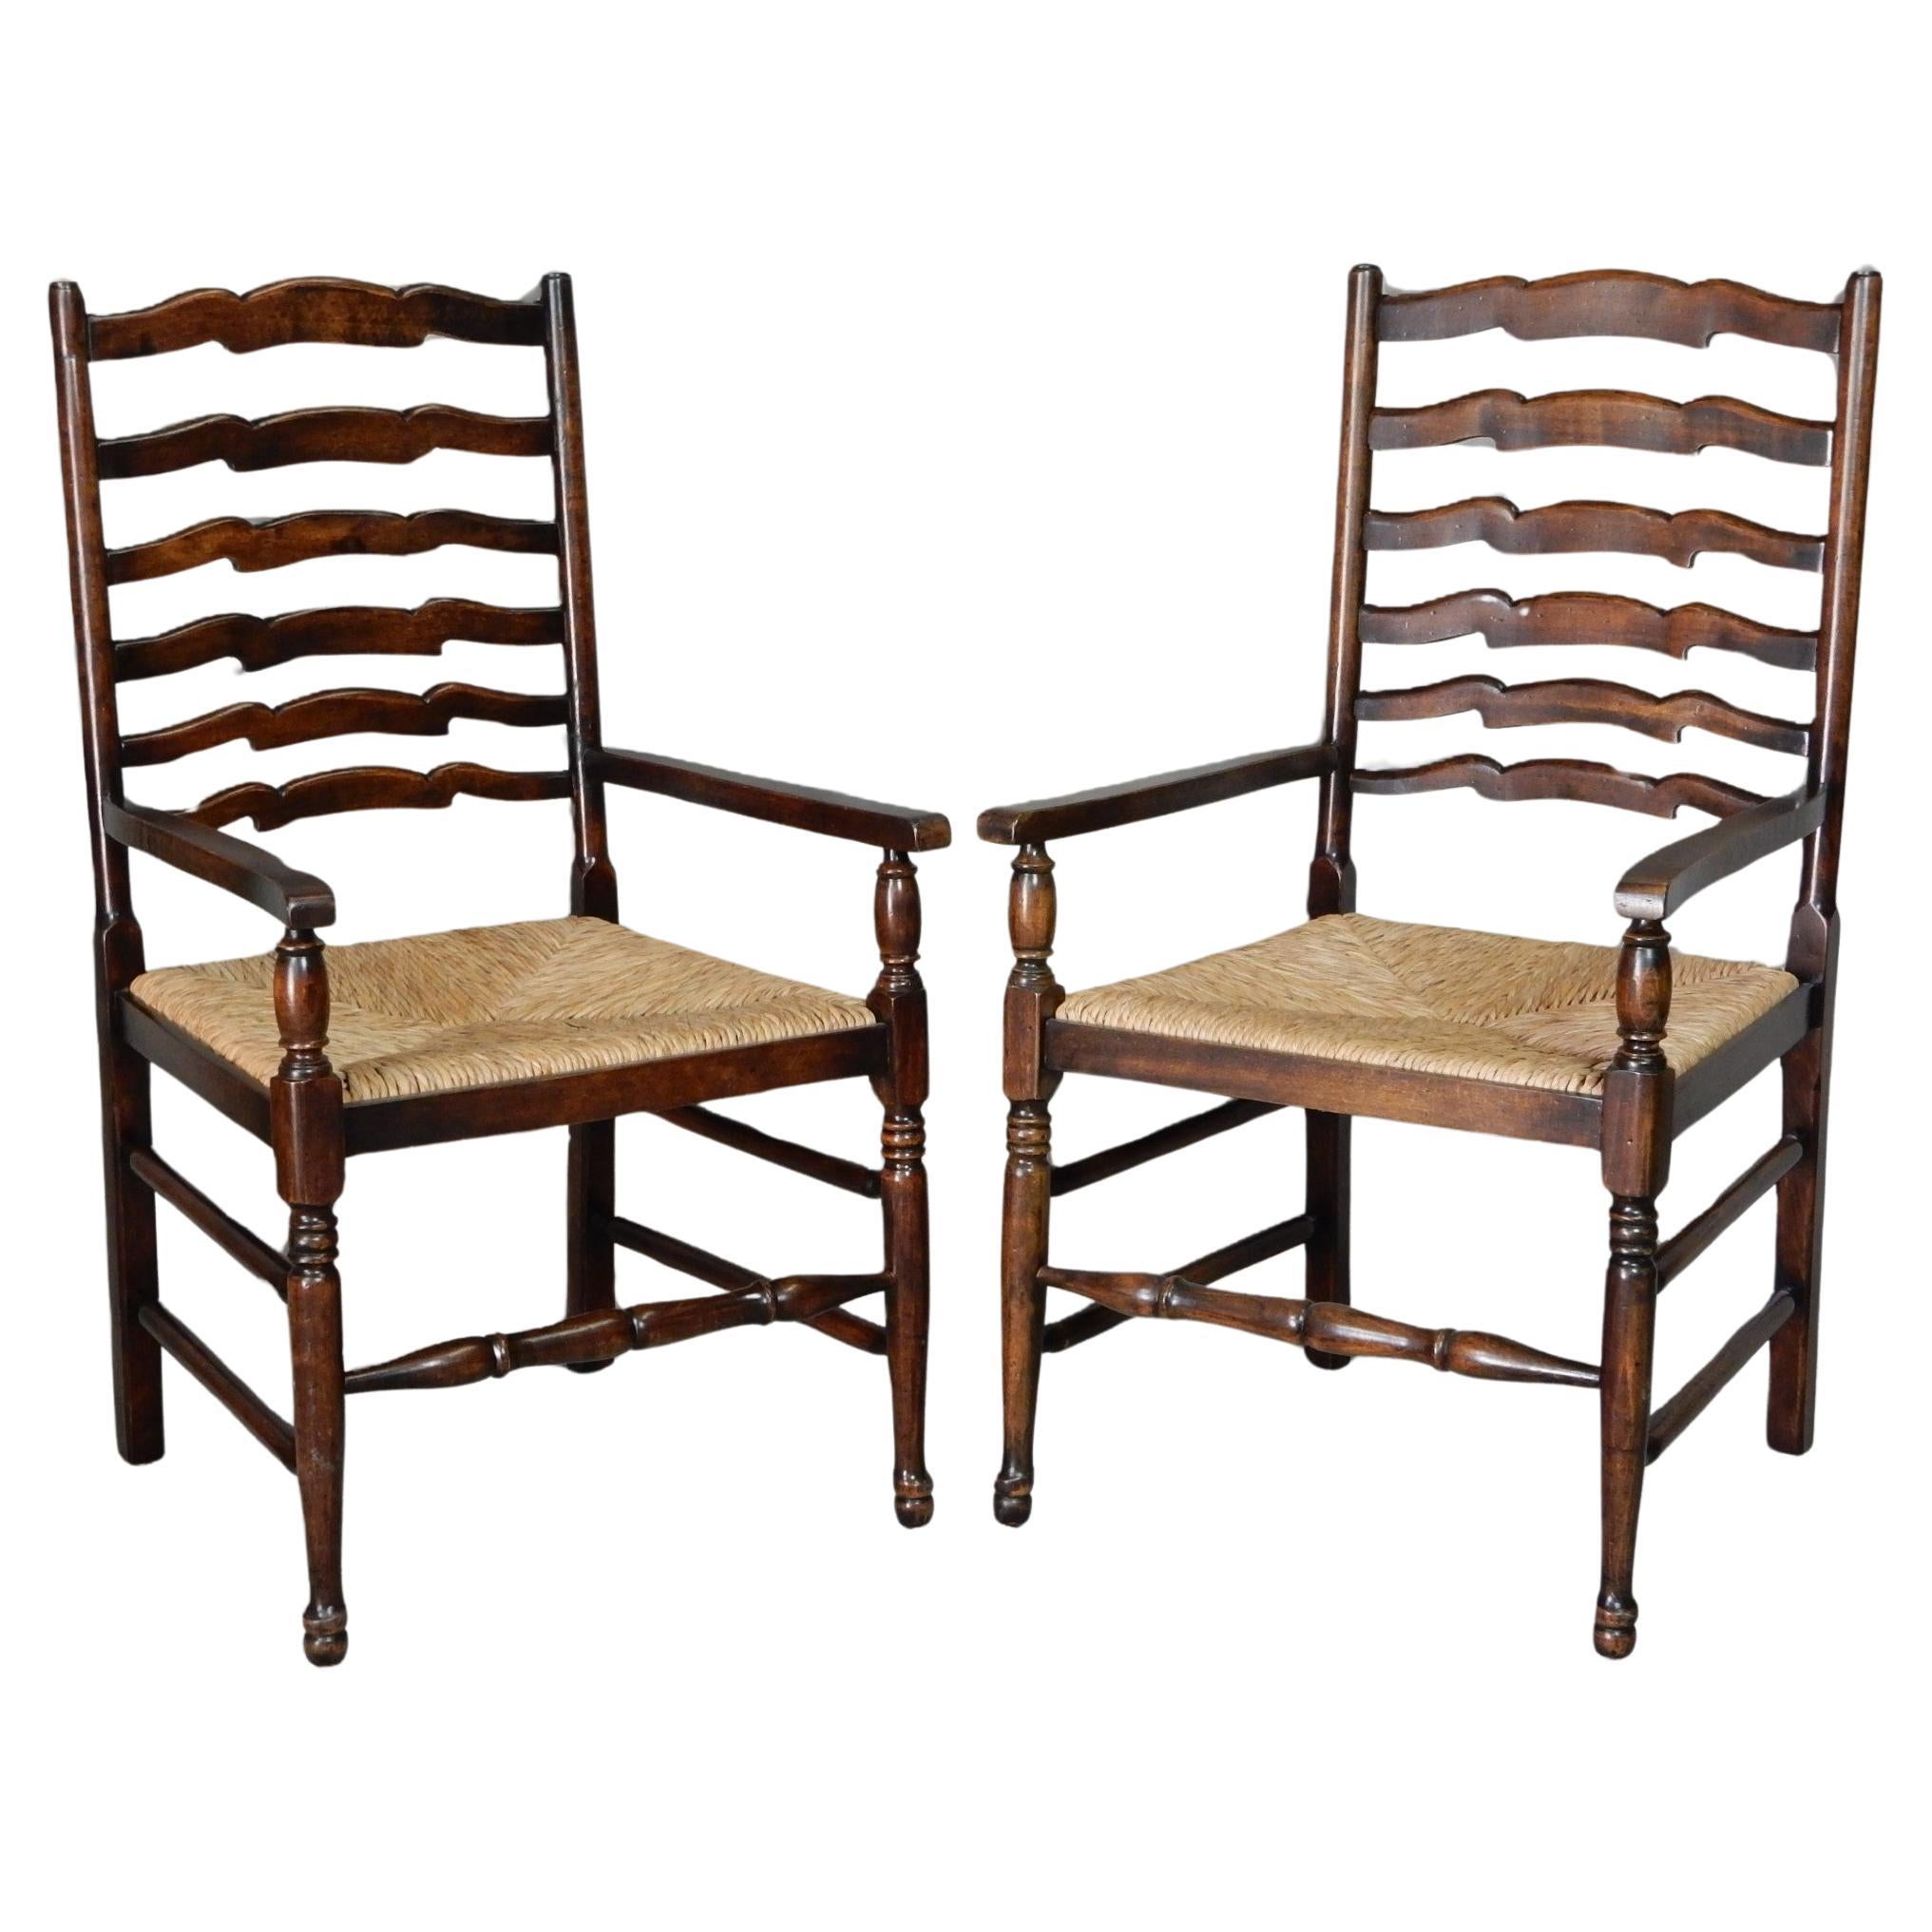 Magnifique paire de fauteuils de plantation Coloni, avec un haut dossier en échelle et une assise en jonc naturel tressé, Circa 1960's. Chêne ou acajou.
Les chaises sont d'une qualité exceptionnelle et ne présentent aucun problème ou dommage.